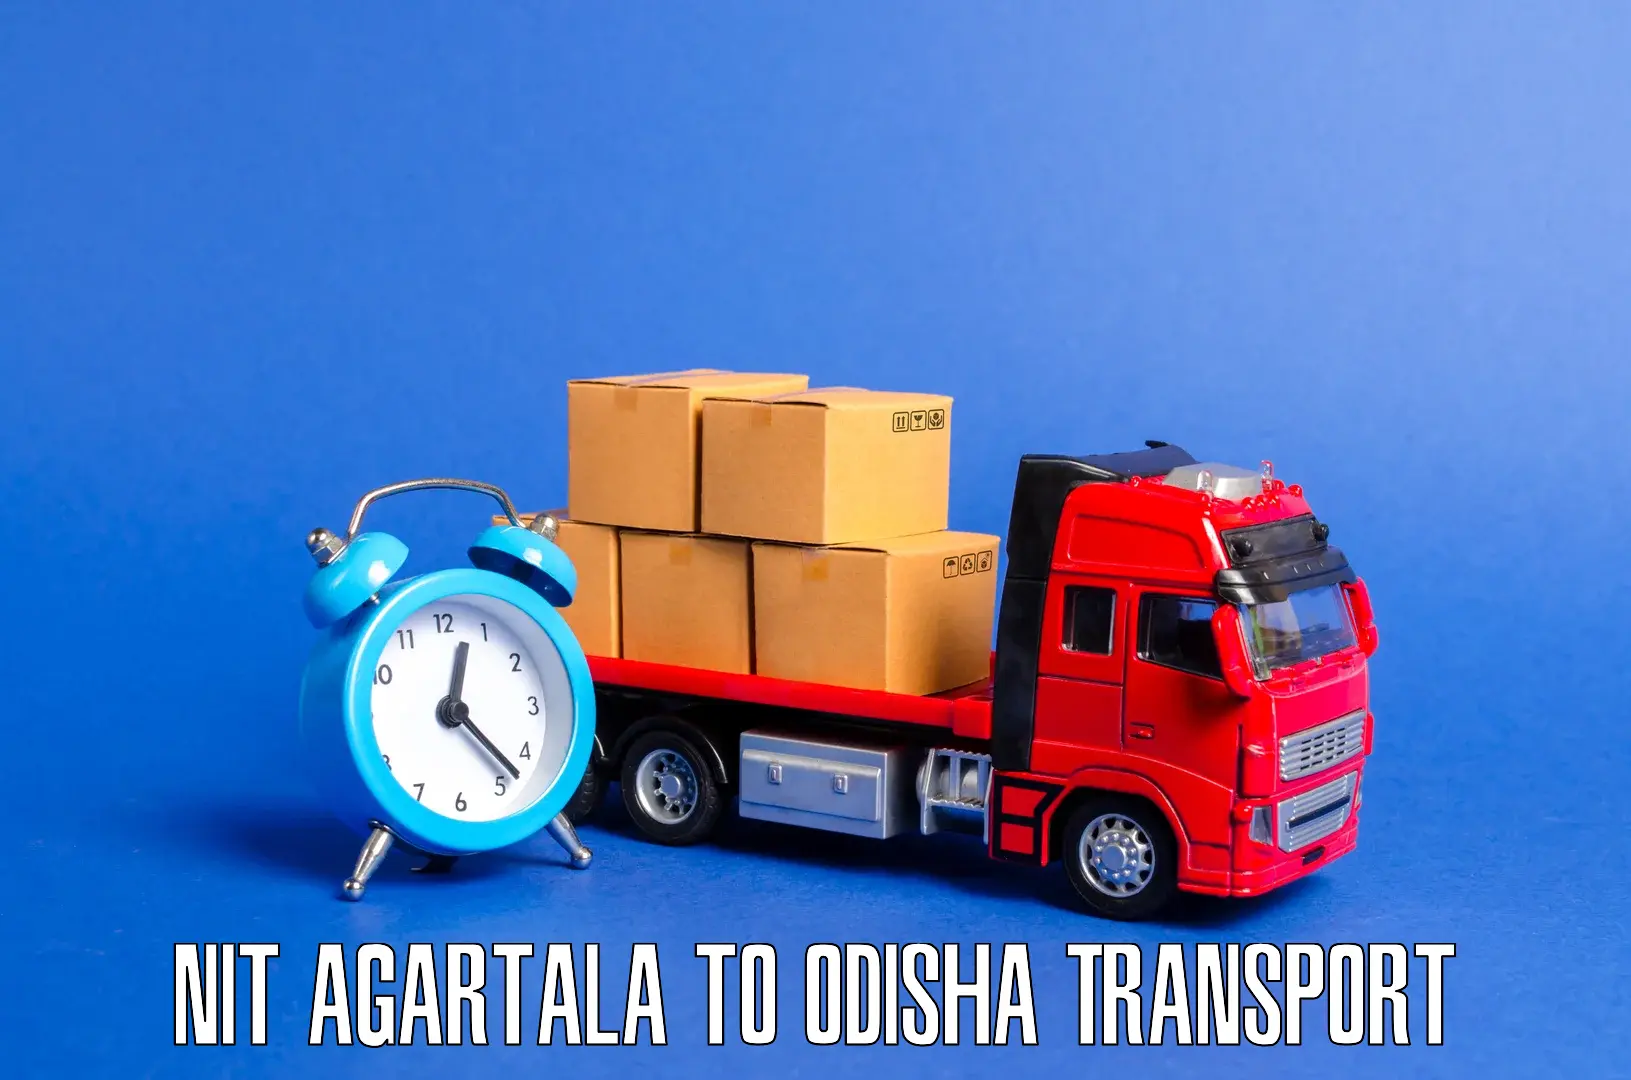 Road transport online services NIT Agartala to Udayagiri Kandhamal